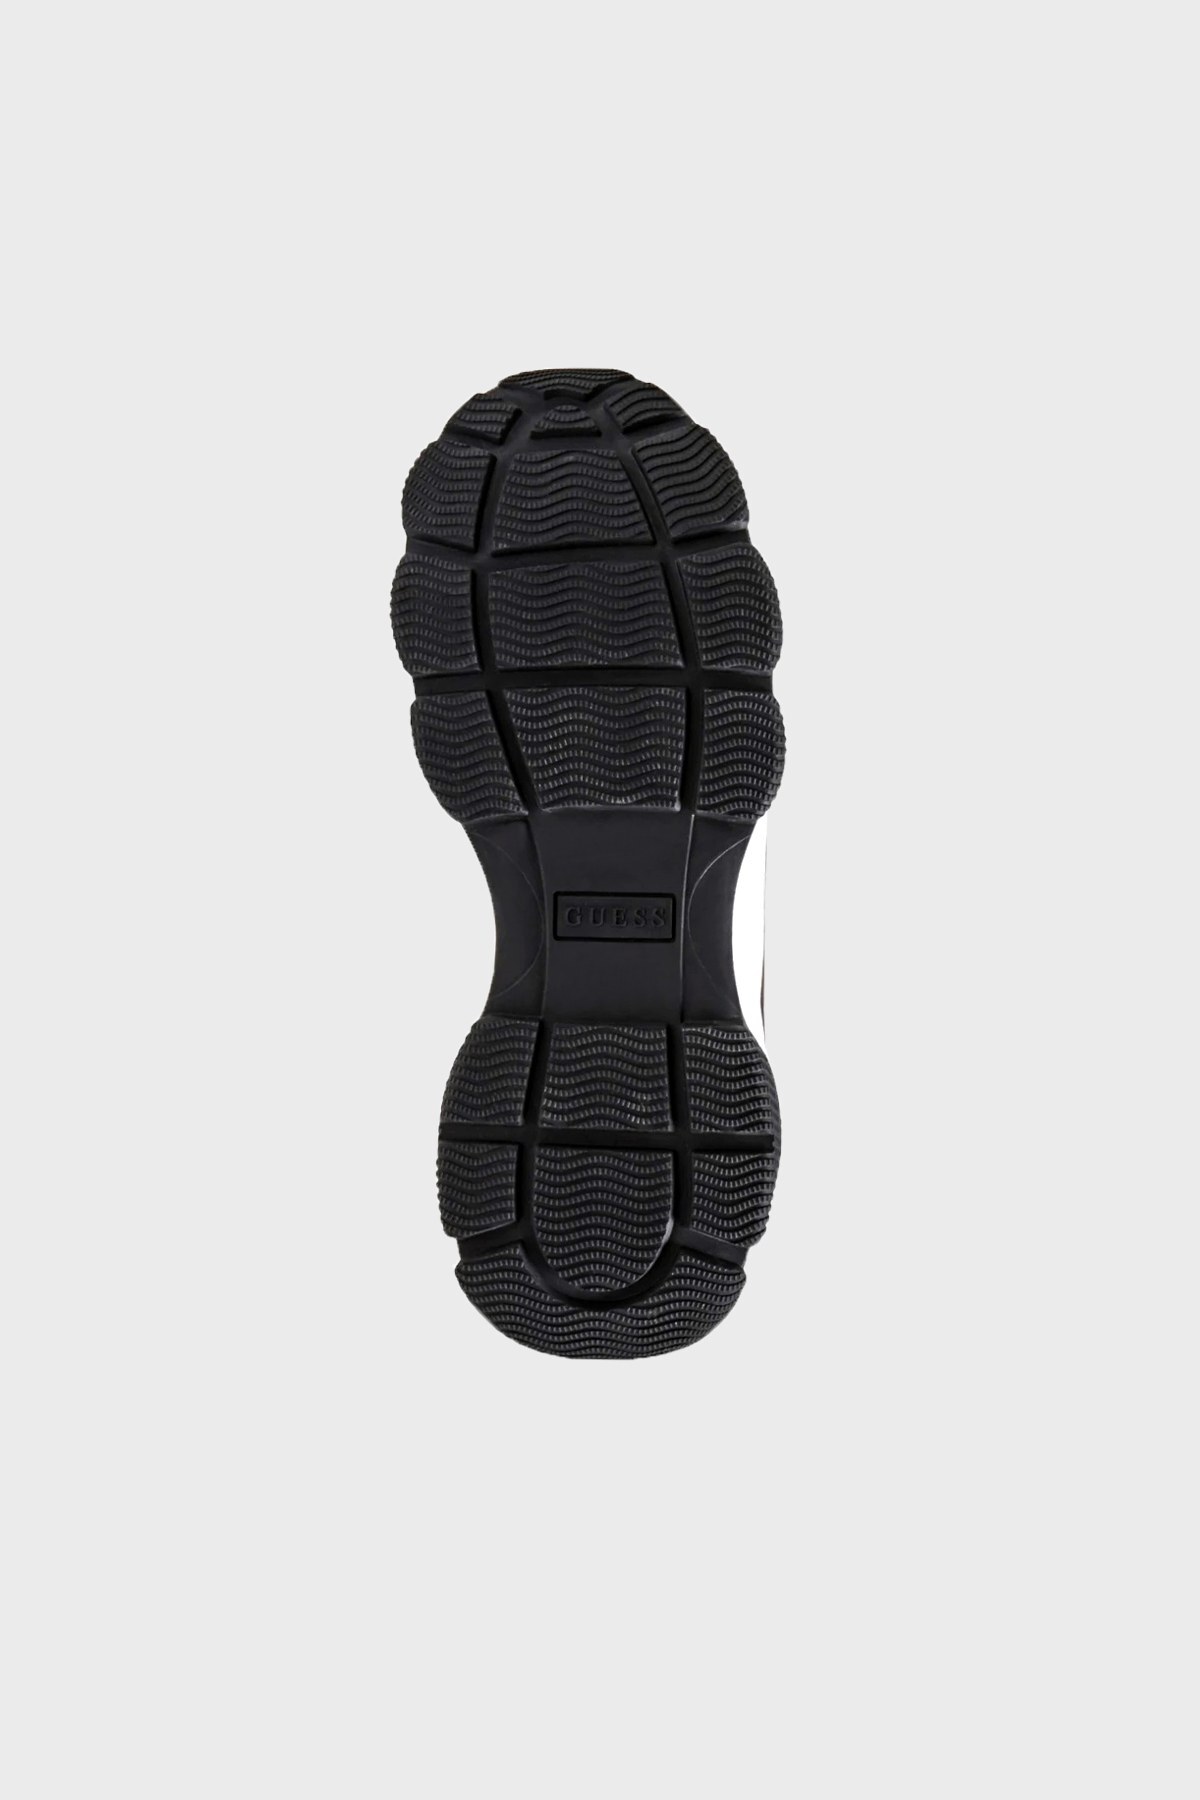 Guess Logolu Kalın Tabanlı Sneaker Bayan Ayakkabı FL8SUNSMA12 BLACK SİYAH